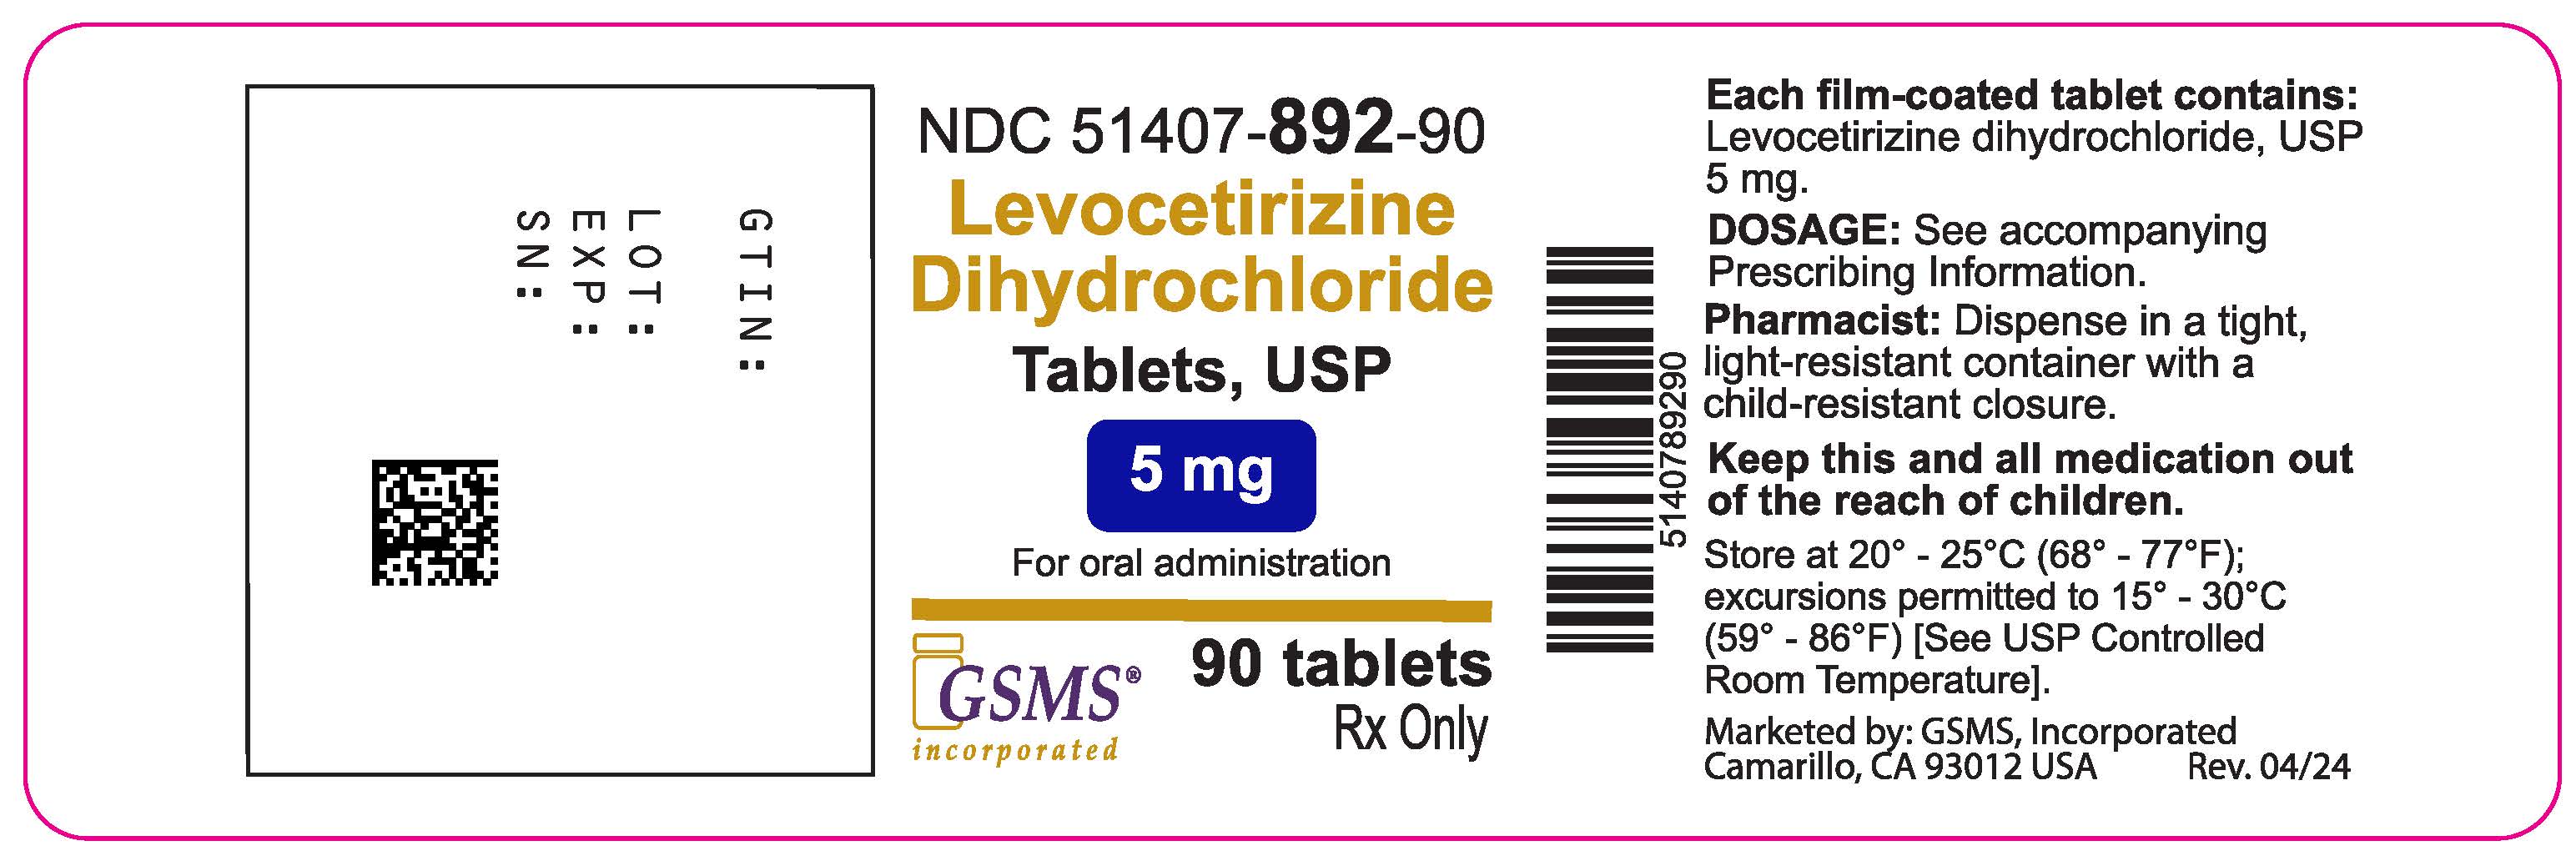 51407-892-90OL - Levocetirizine 5 mg - Rev. 0424.jpg